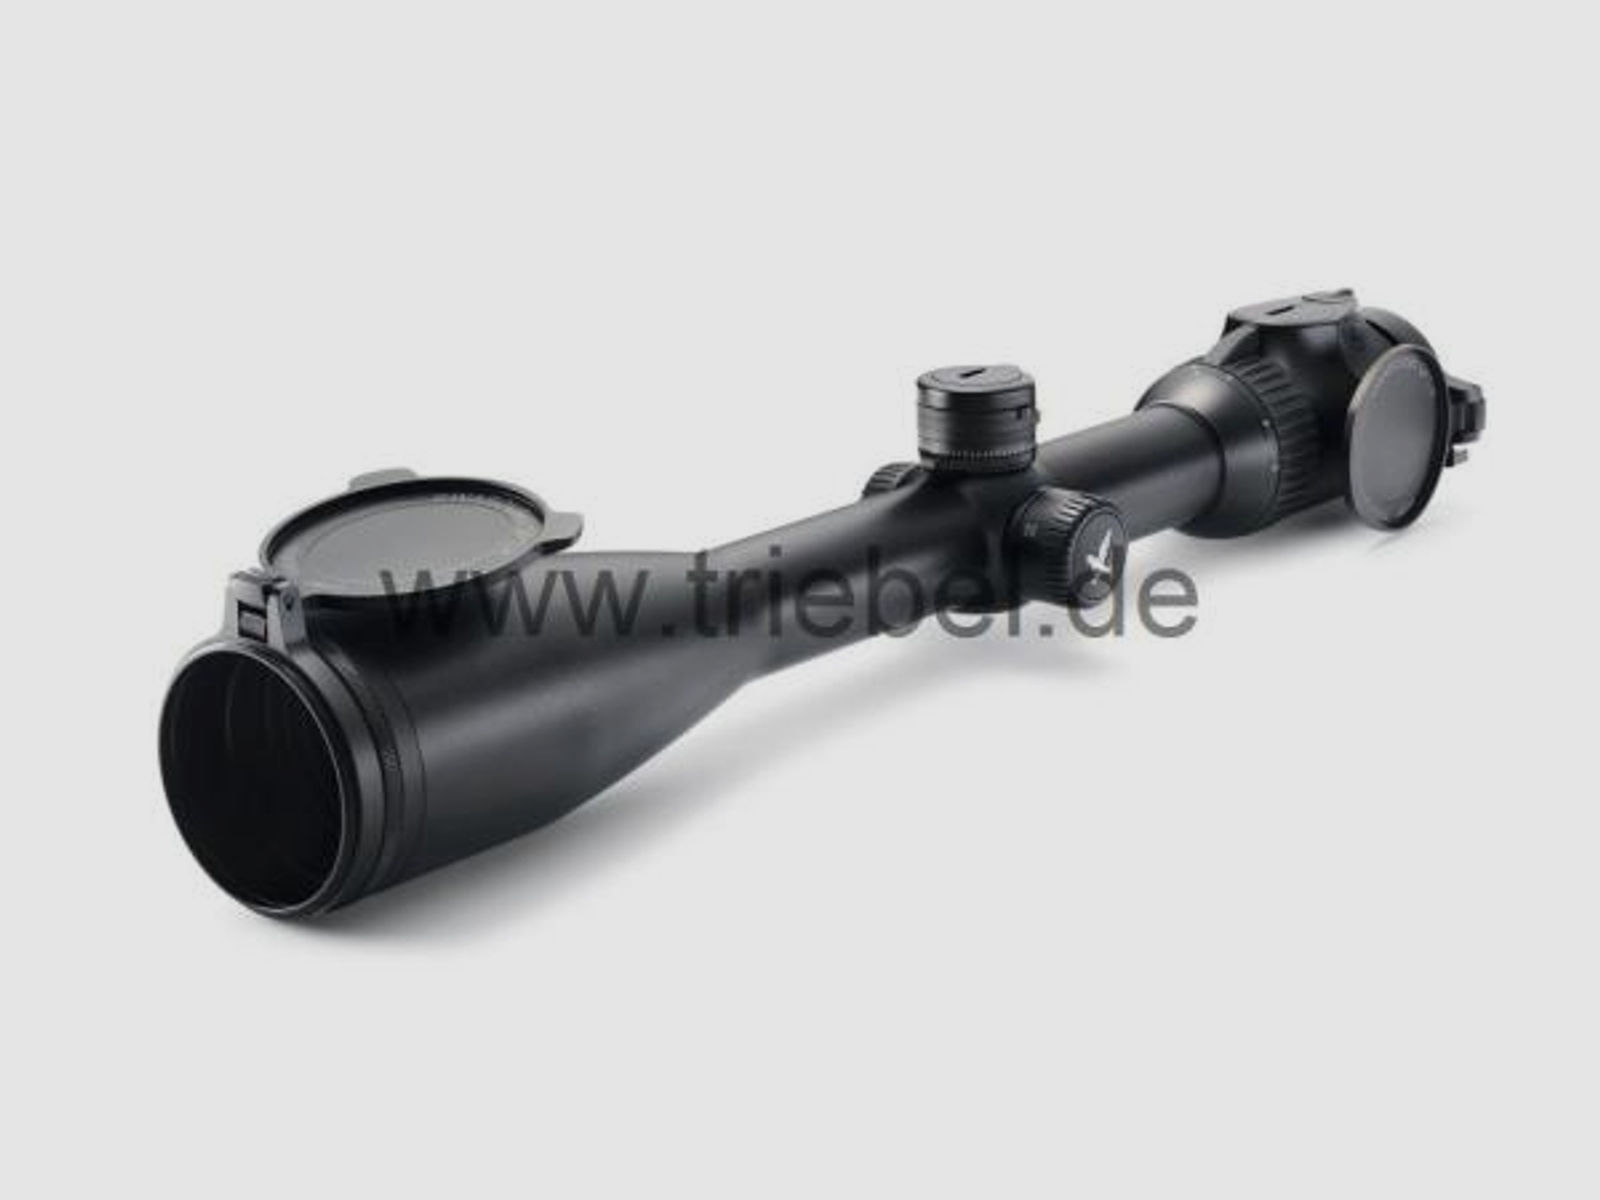 SWAROVSKI Zubehör für Zielfernrohre Objektivdeckel 44 mm SLP-O-44 f. Z8i, Z6(i), Z5, Z3, X5(i)